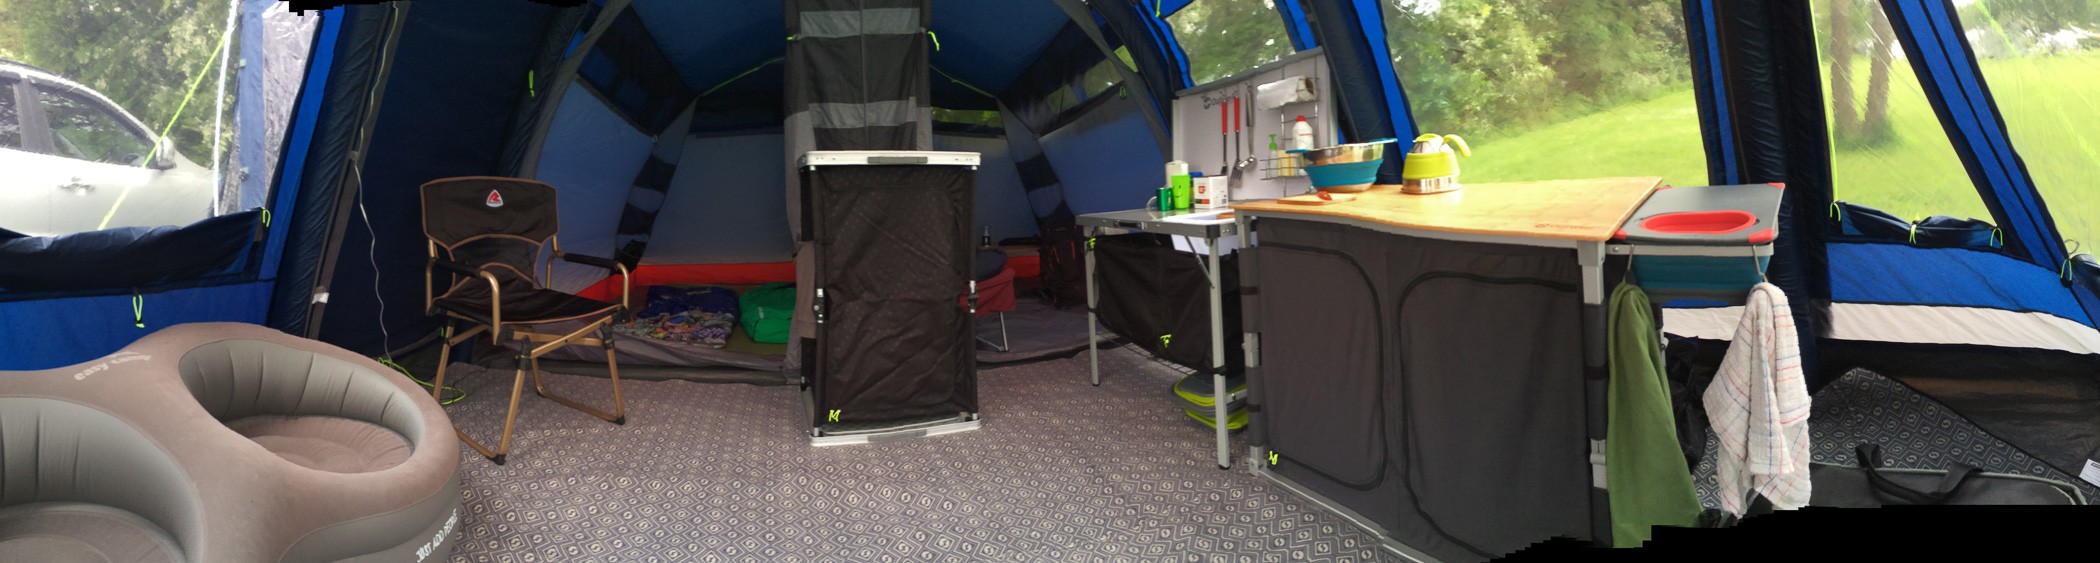 Inside the Montana 6SA tent